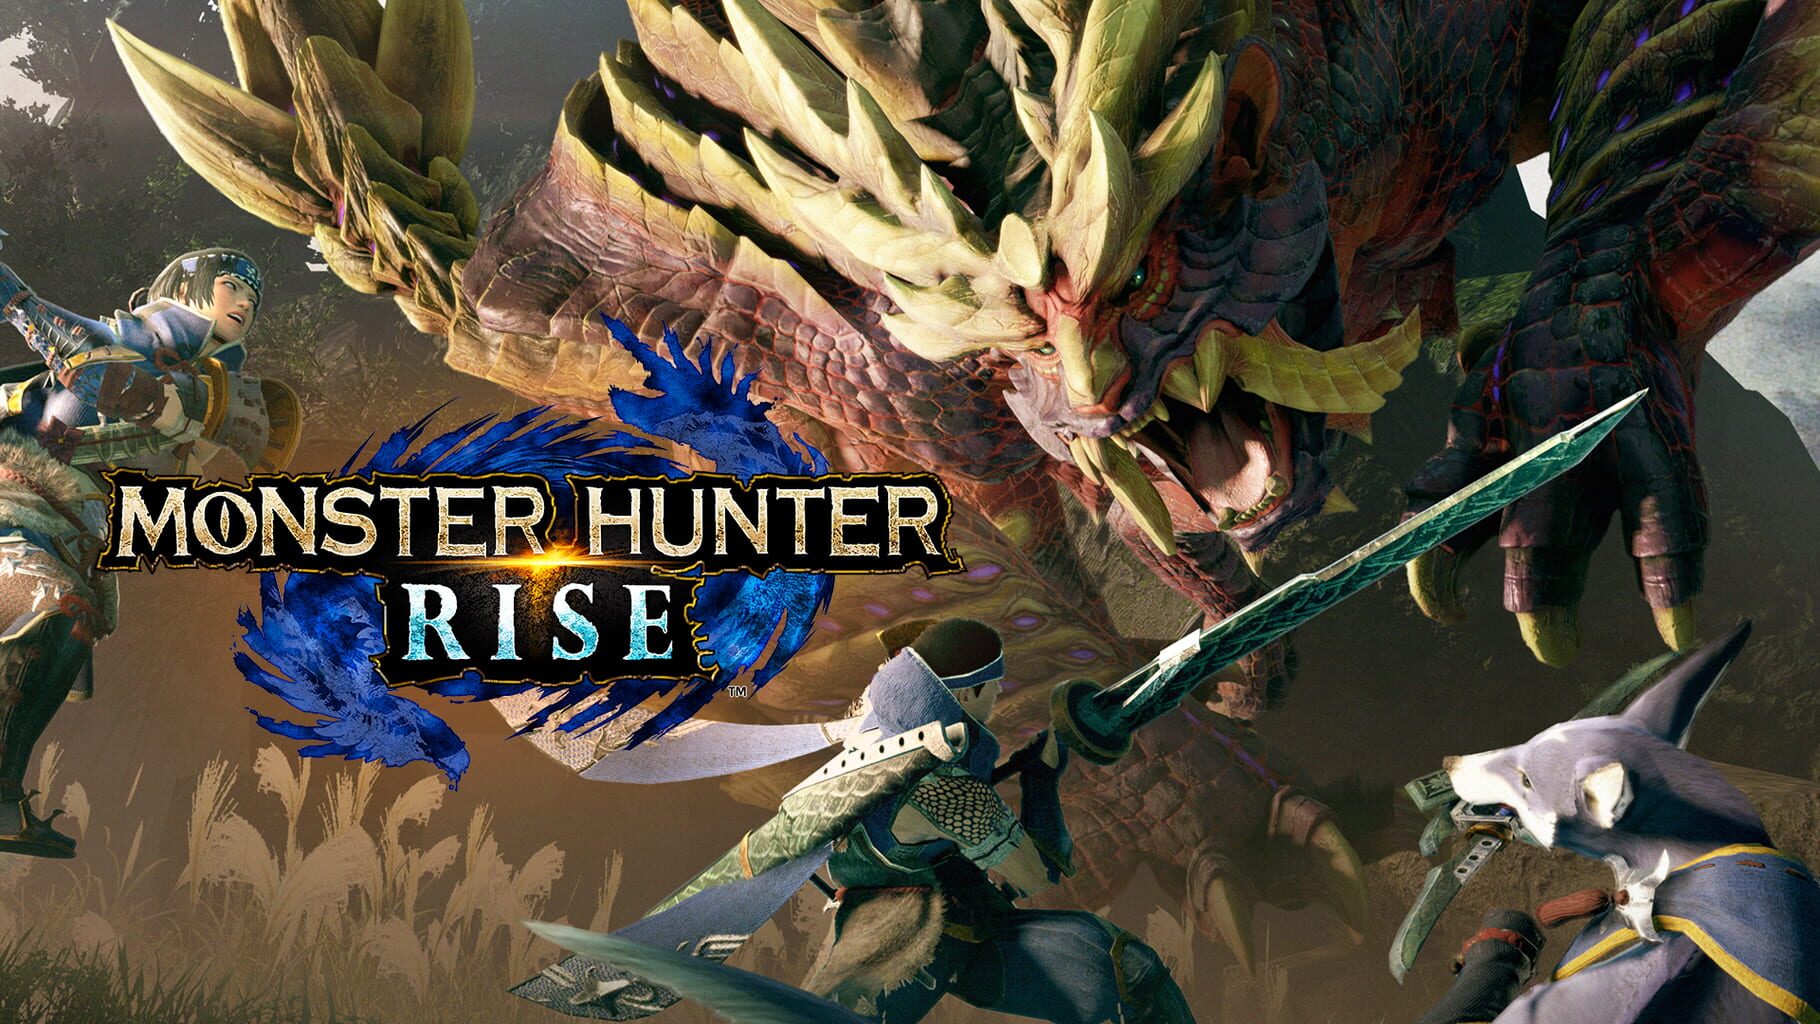 Artwork for Monster Hunter Rise